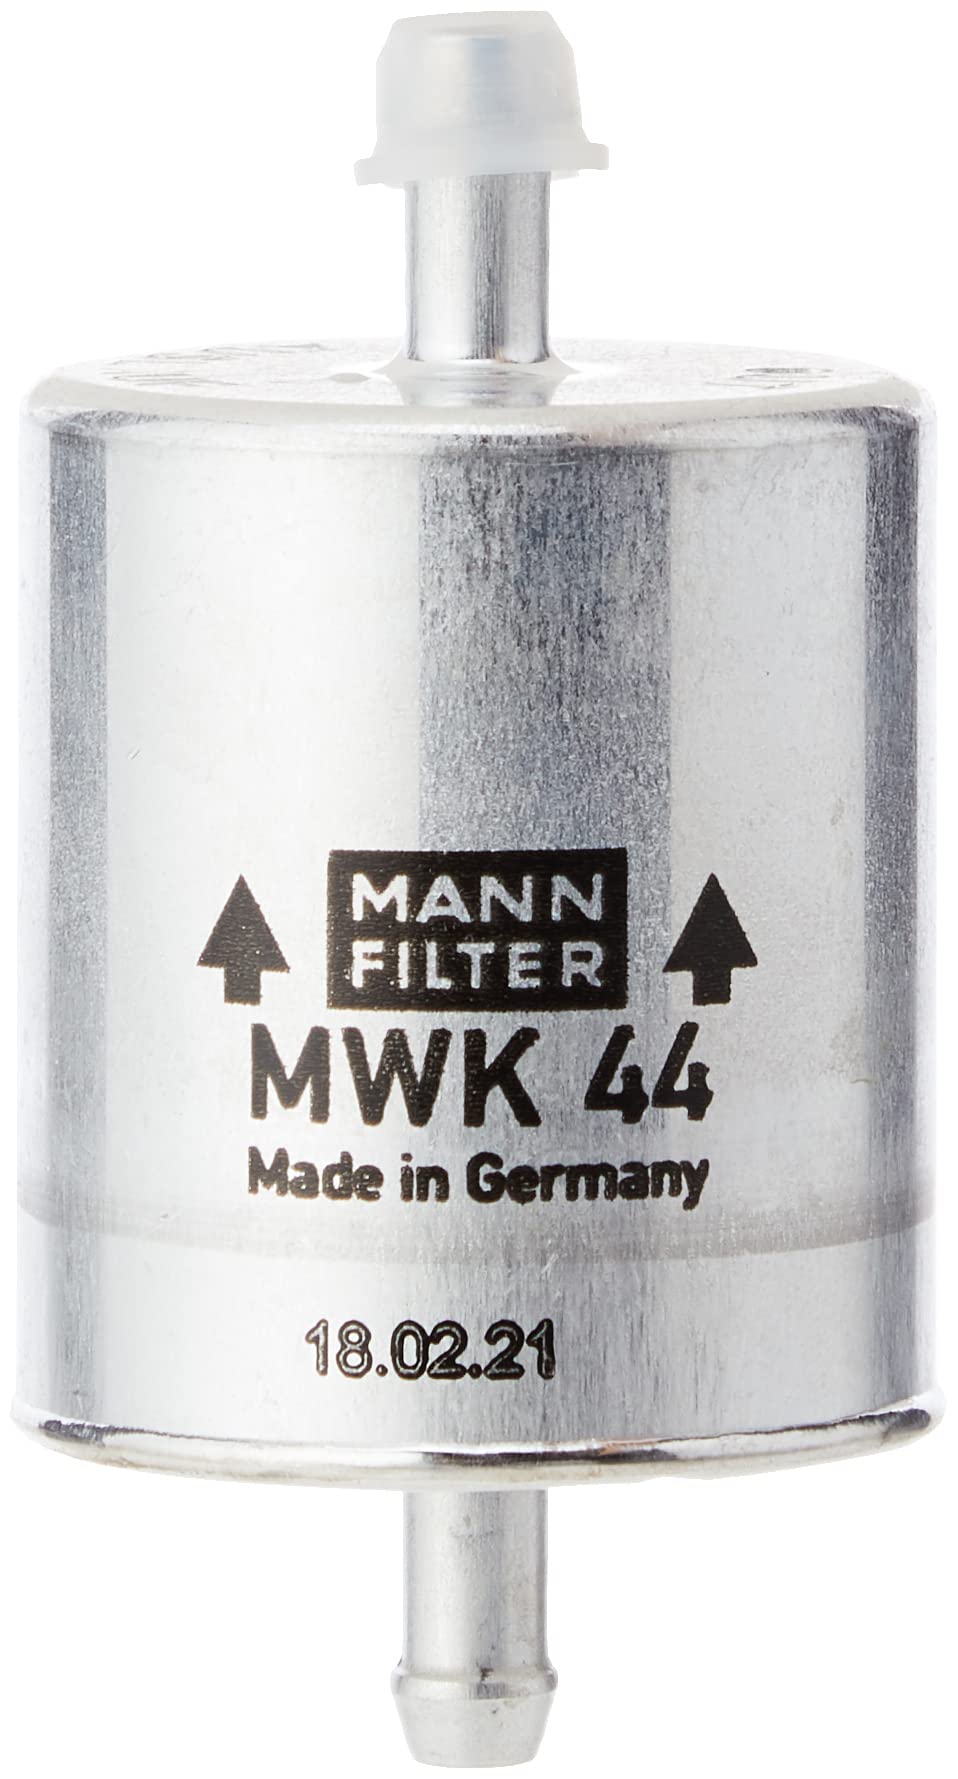 MANN-FILTER MWK 44 Kraftstofffilter – Für Motorräder von MANN-FILTER